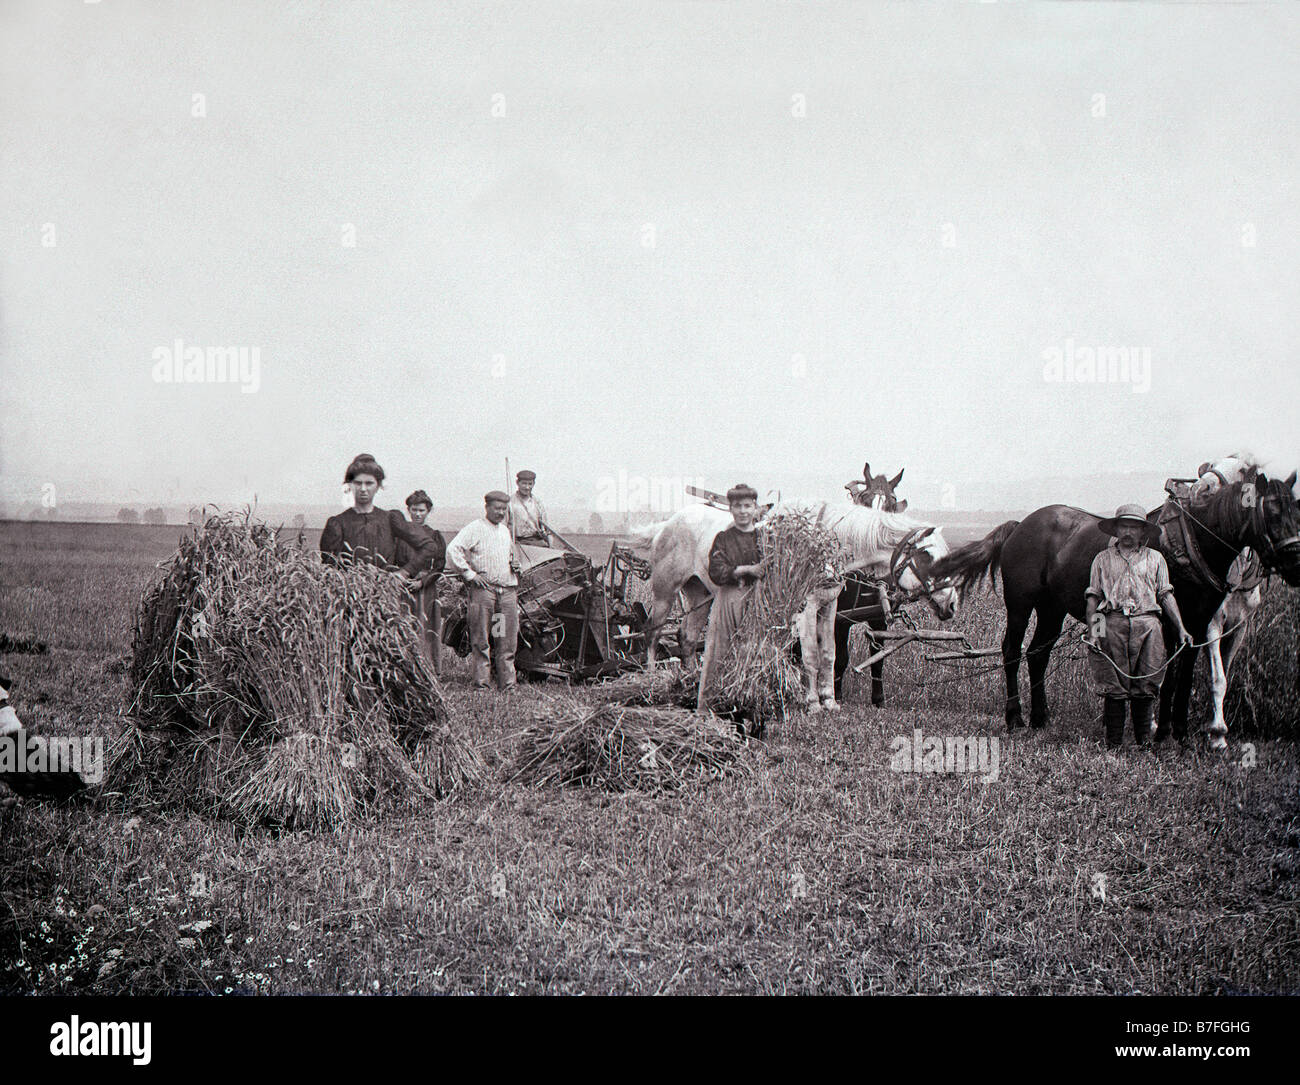 Les foins en France vers 1900 Batteuse trebbiatrice macchinari agricoli agricoltura agricoltura pagliaio lavorando i lavoratori rurali della granella Foto Stock